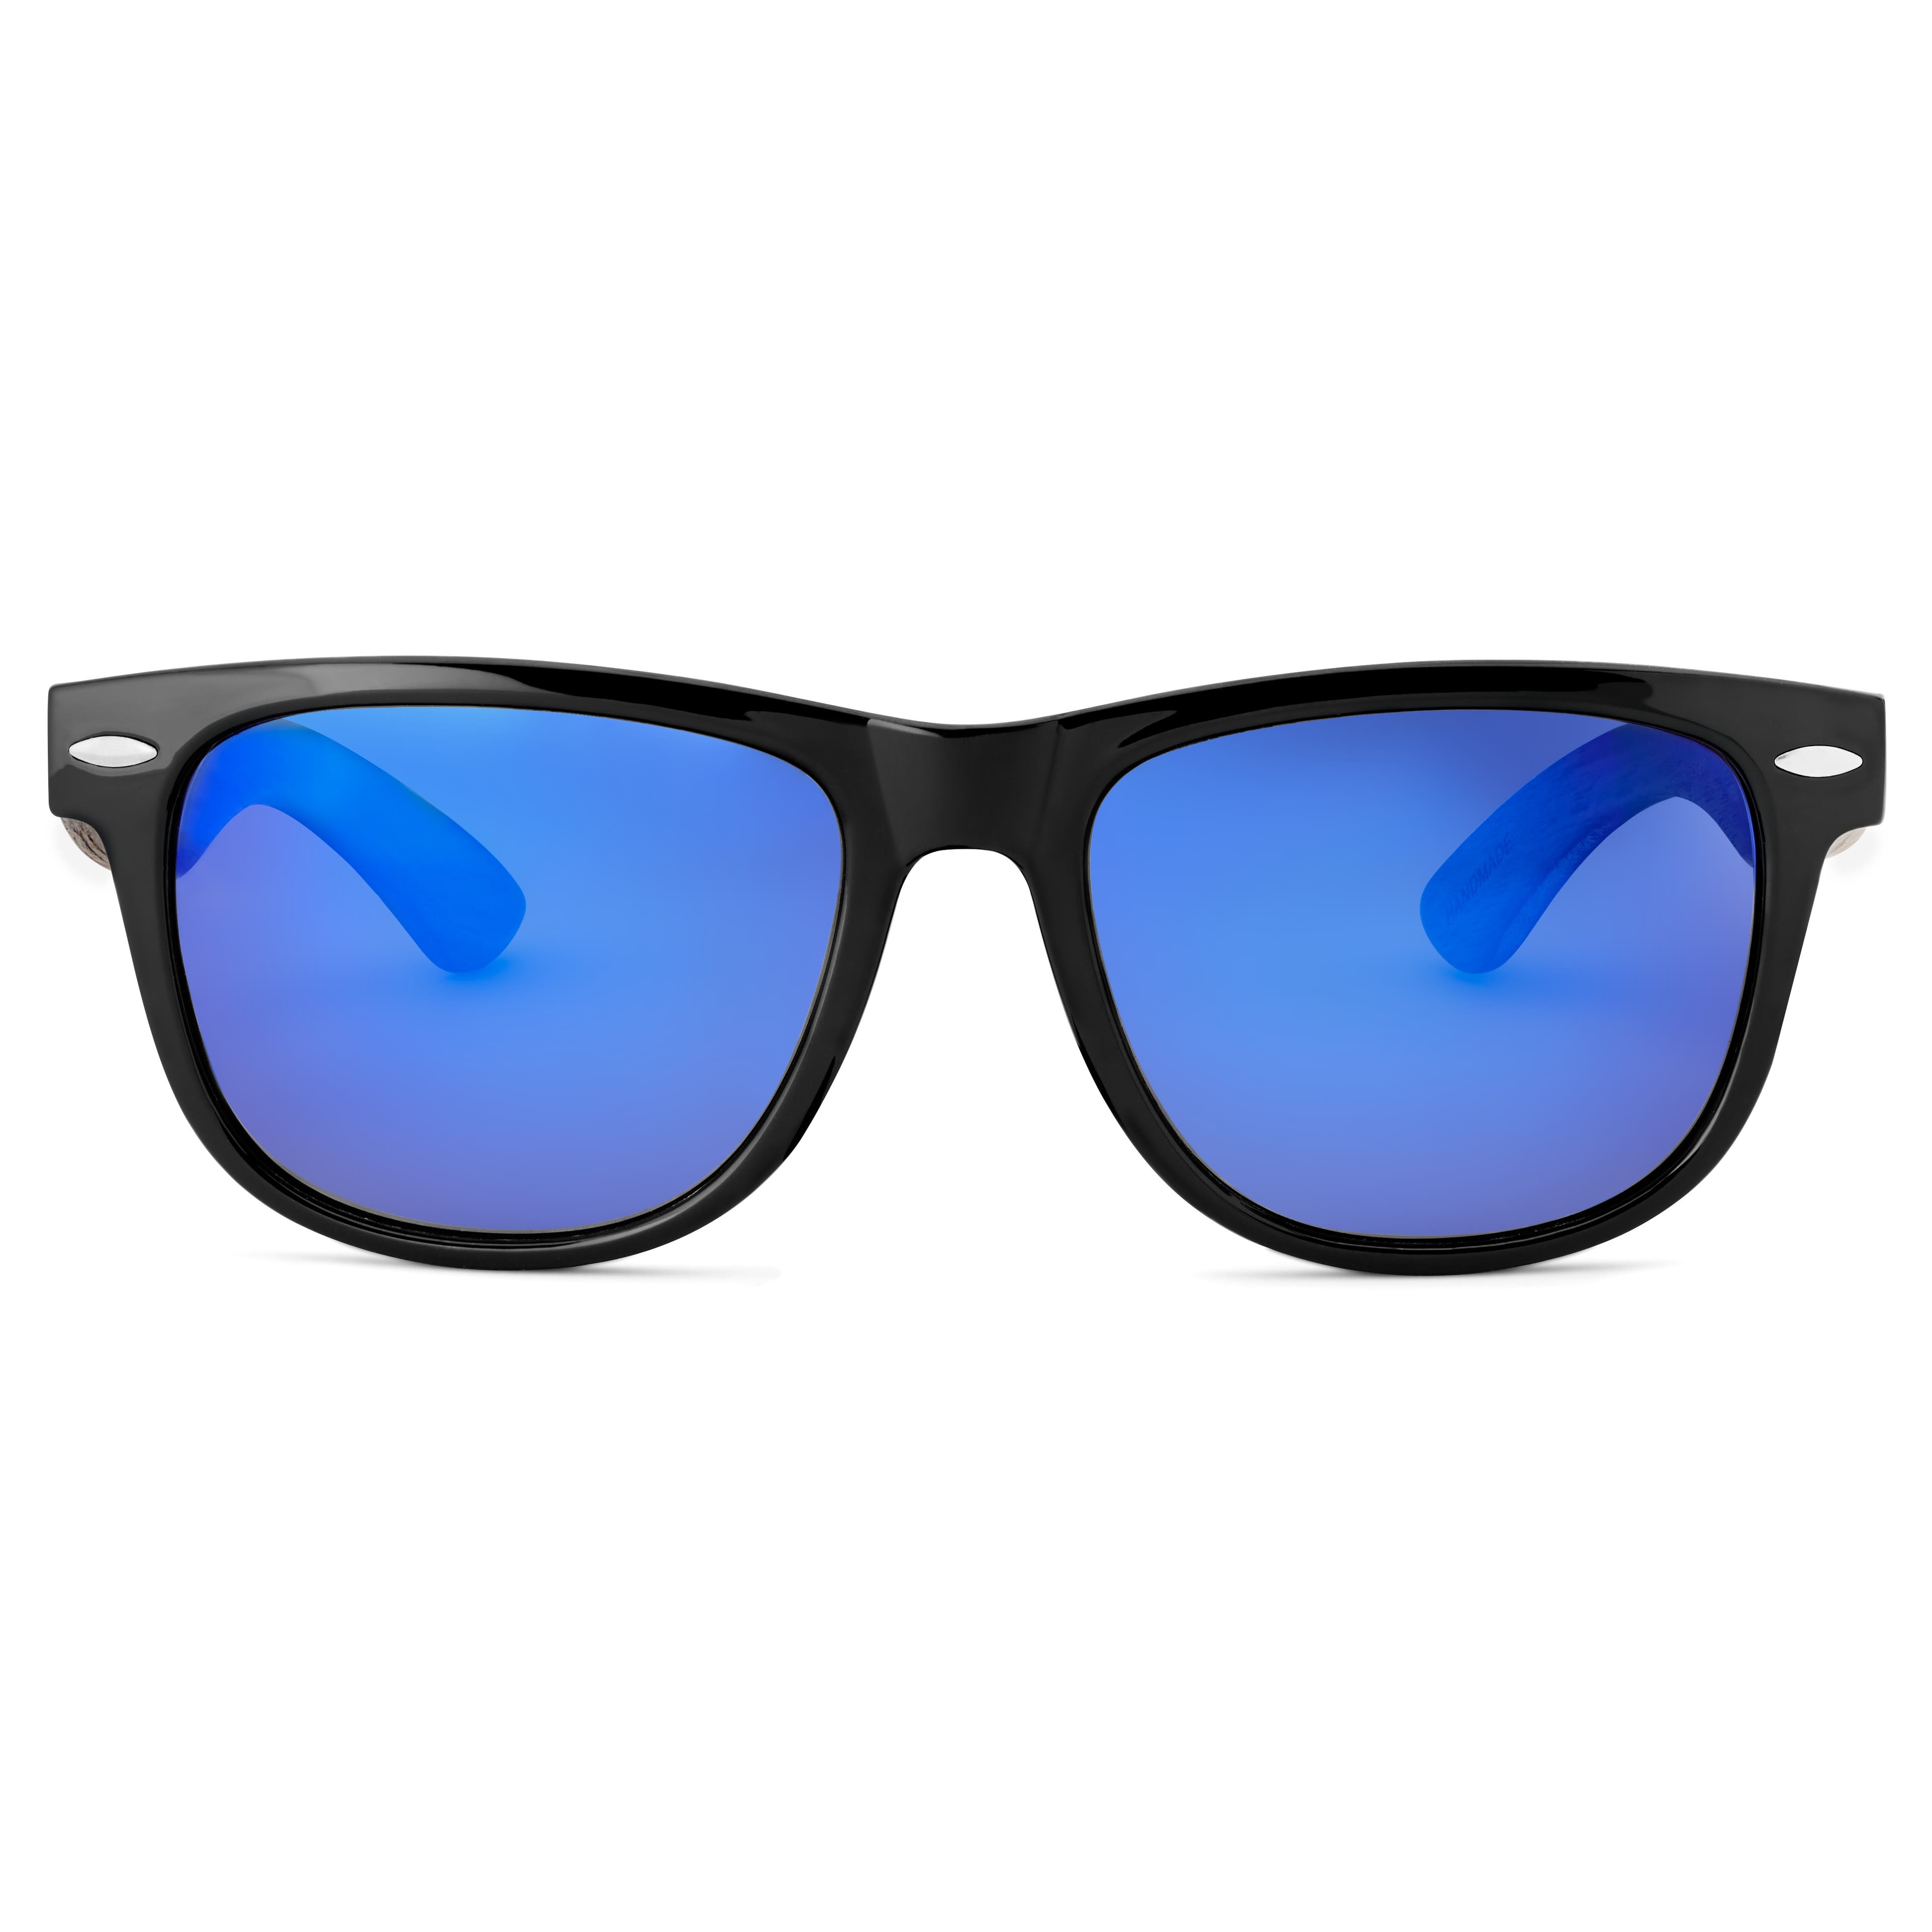 Ochelari de soare retro negri cu lentile polarizate albastre și brațe din lemn